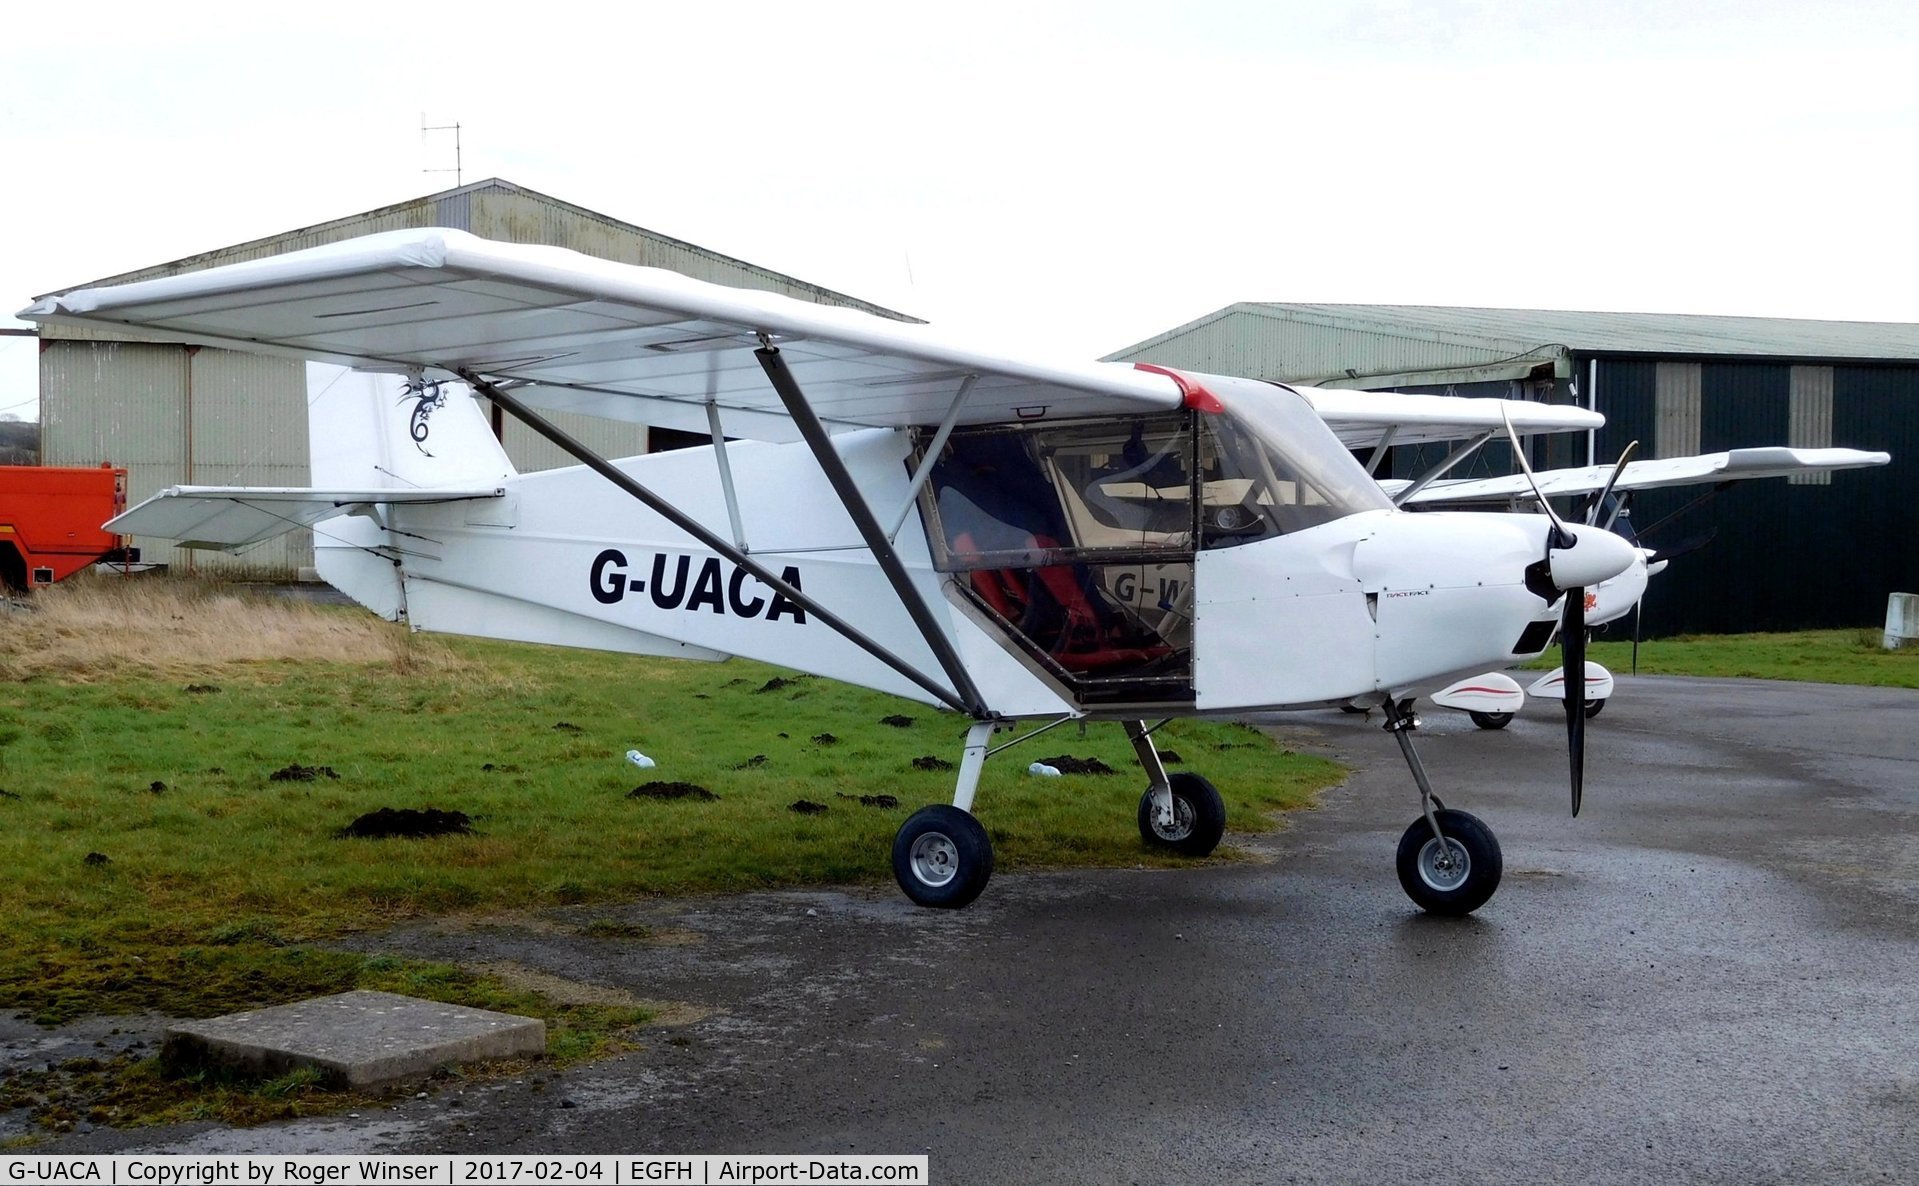 G-UACA, 2004 Best Off SkyRanger Swift 912(1) C/N BMAA/HB/324, Visitng Skyranger Swift.